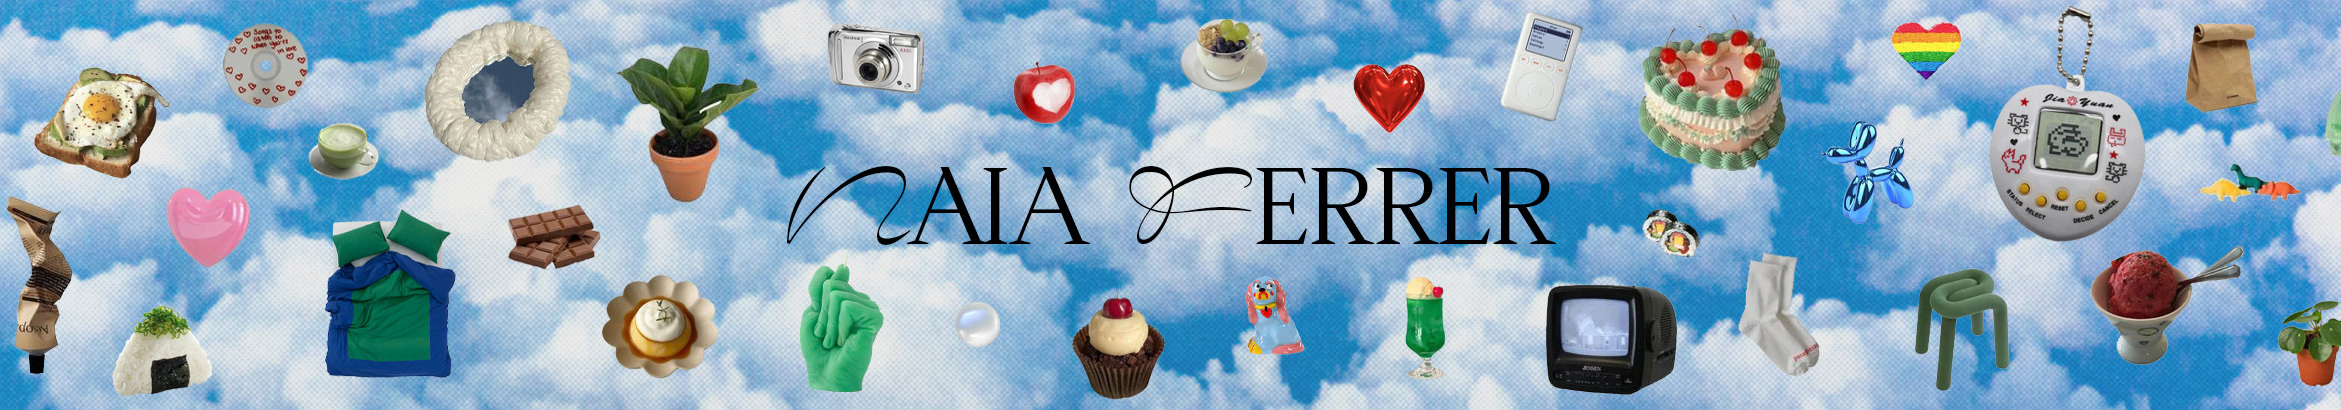 Naia Ferrer's profile banner